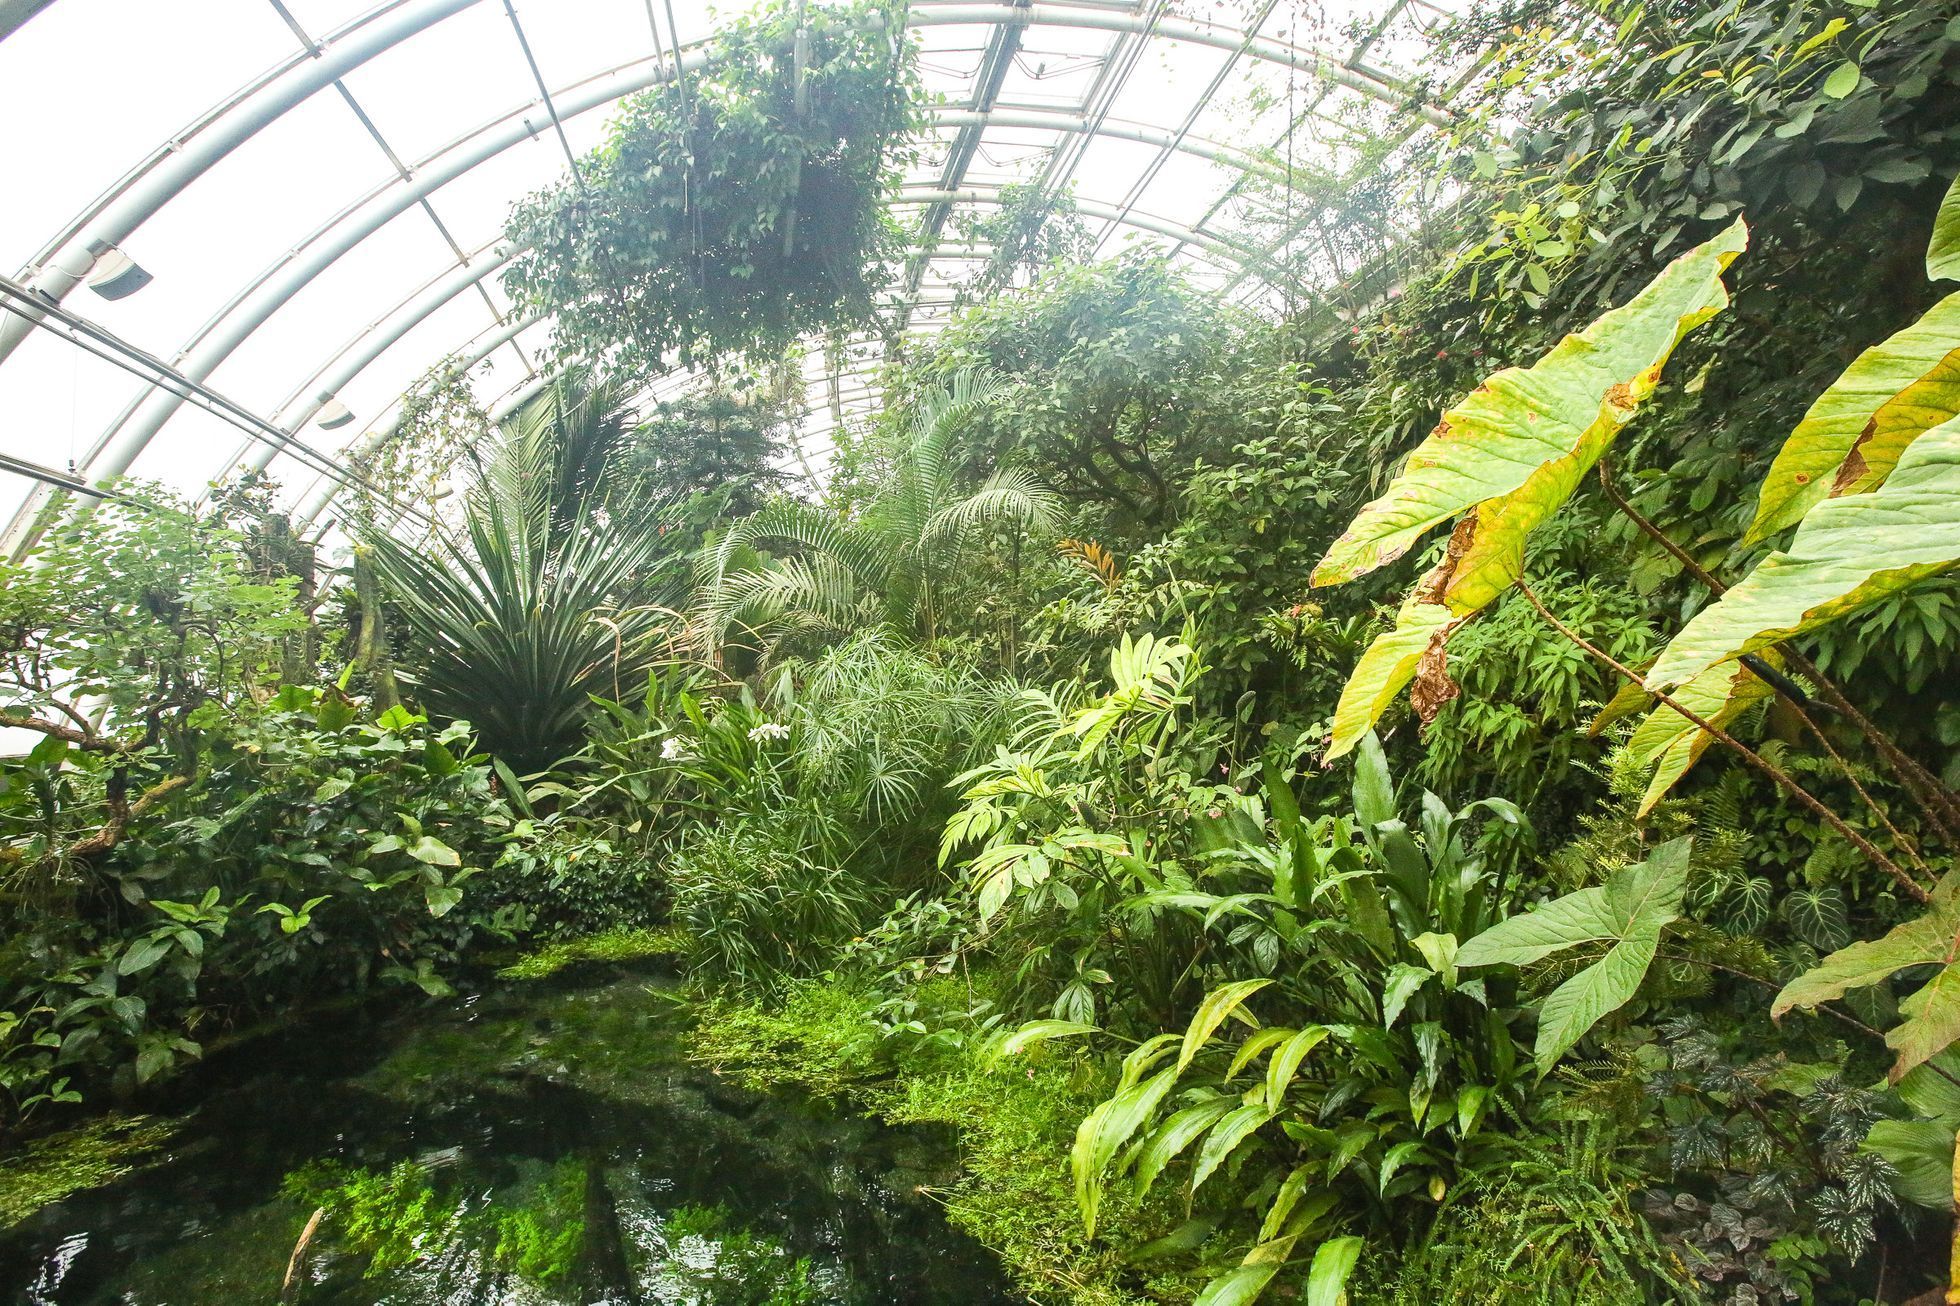 Botanická zahrada v pražské Troji, skleník Fata Morgana, květiny, pěstování, rostliny, příroda, botanik